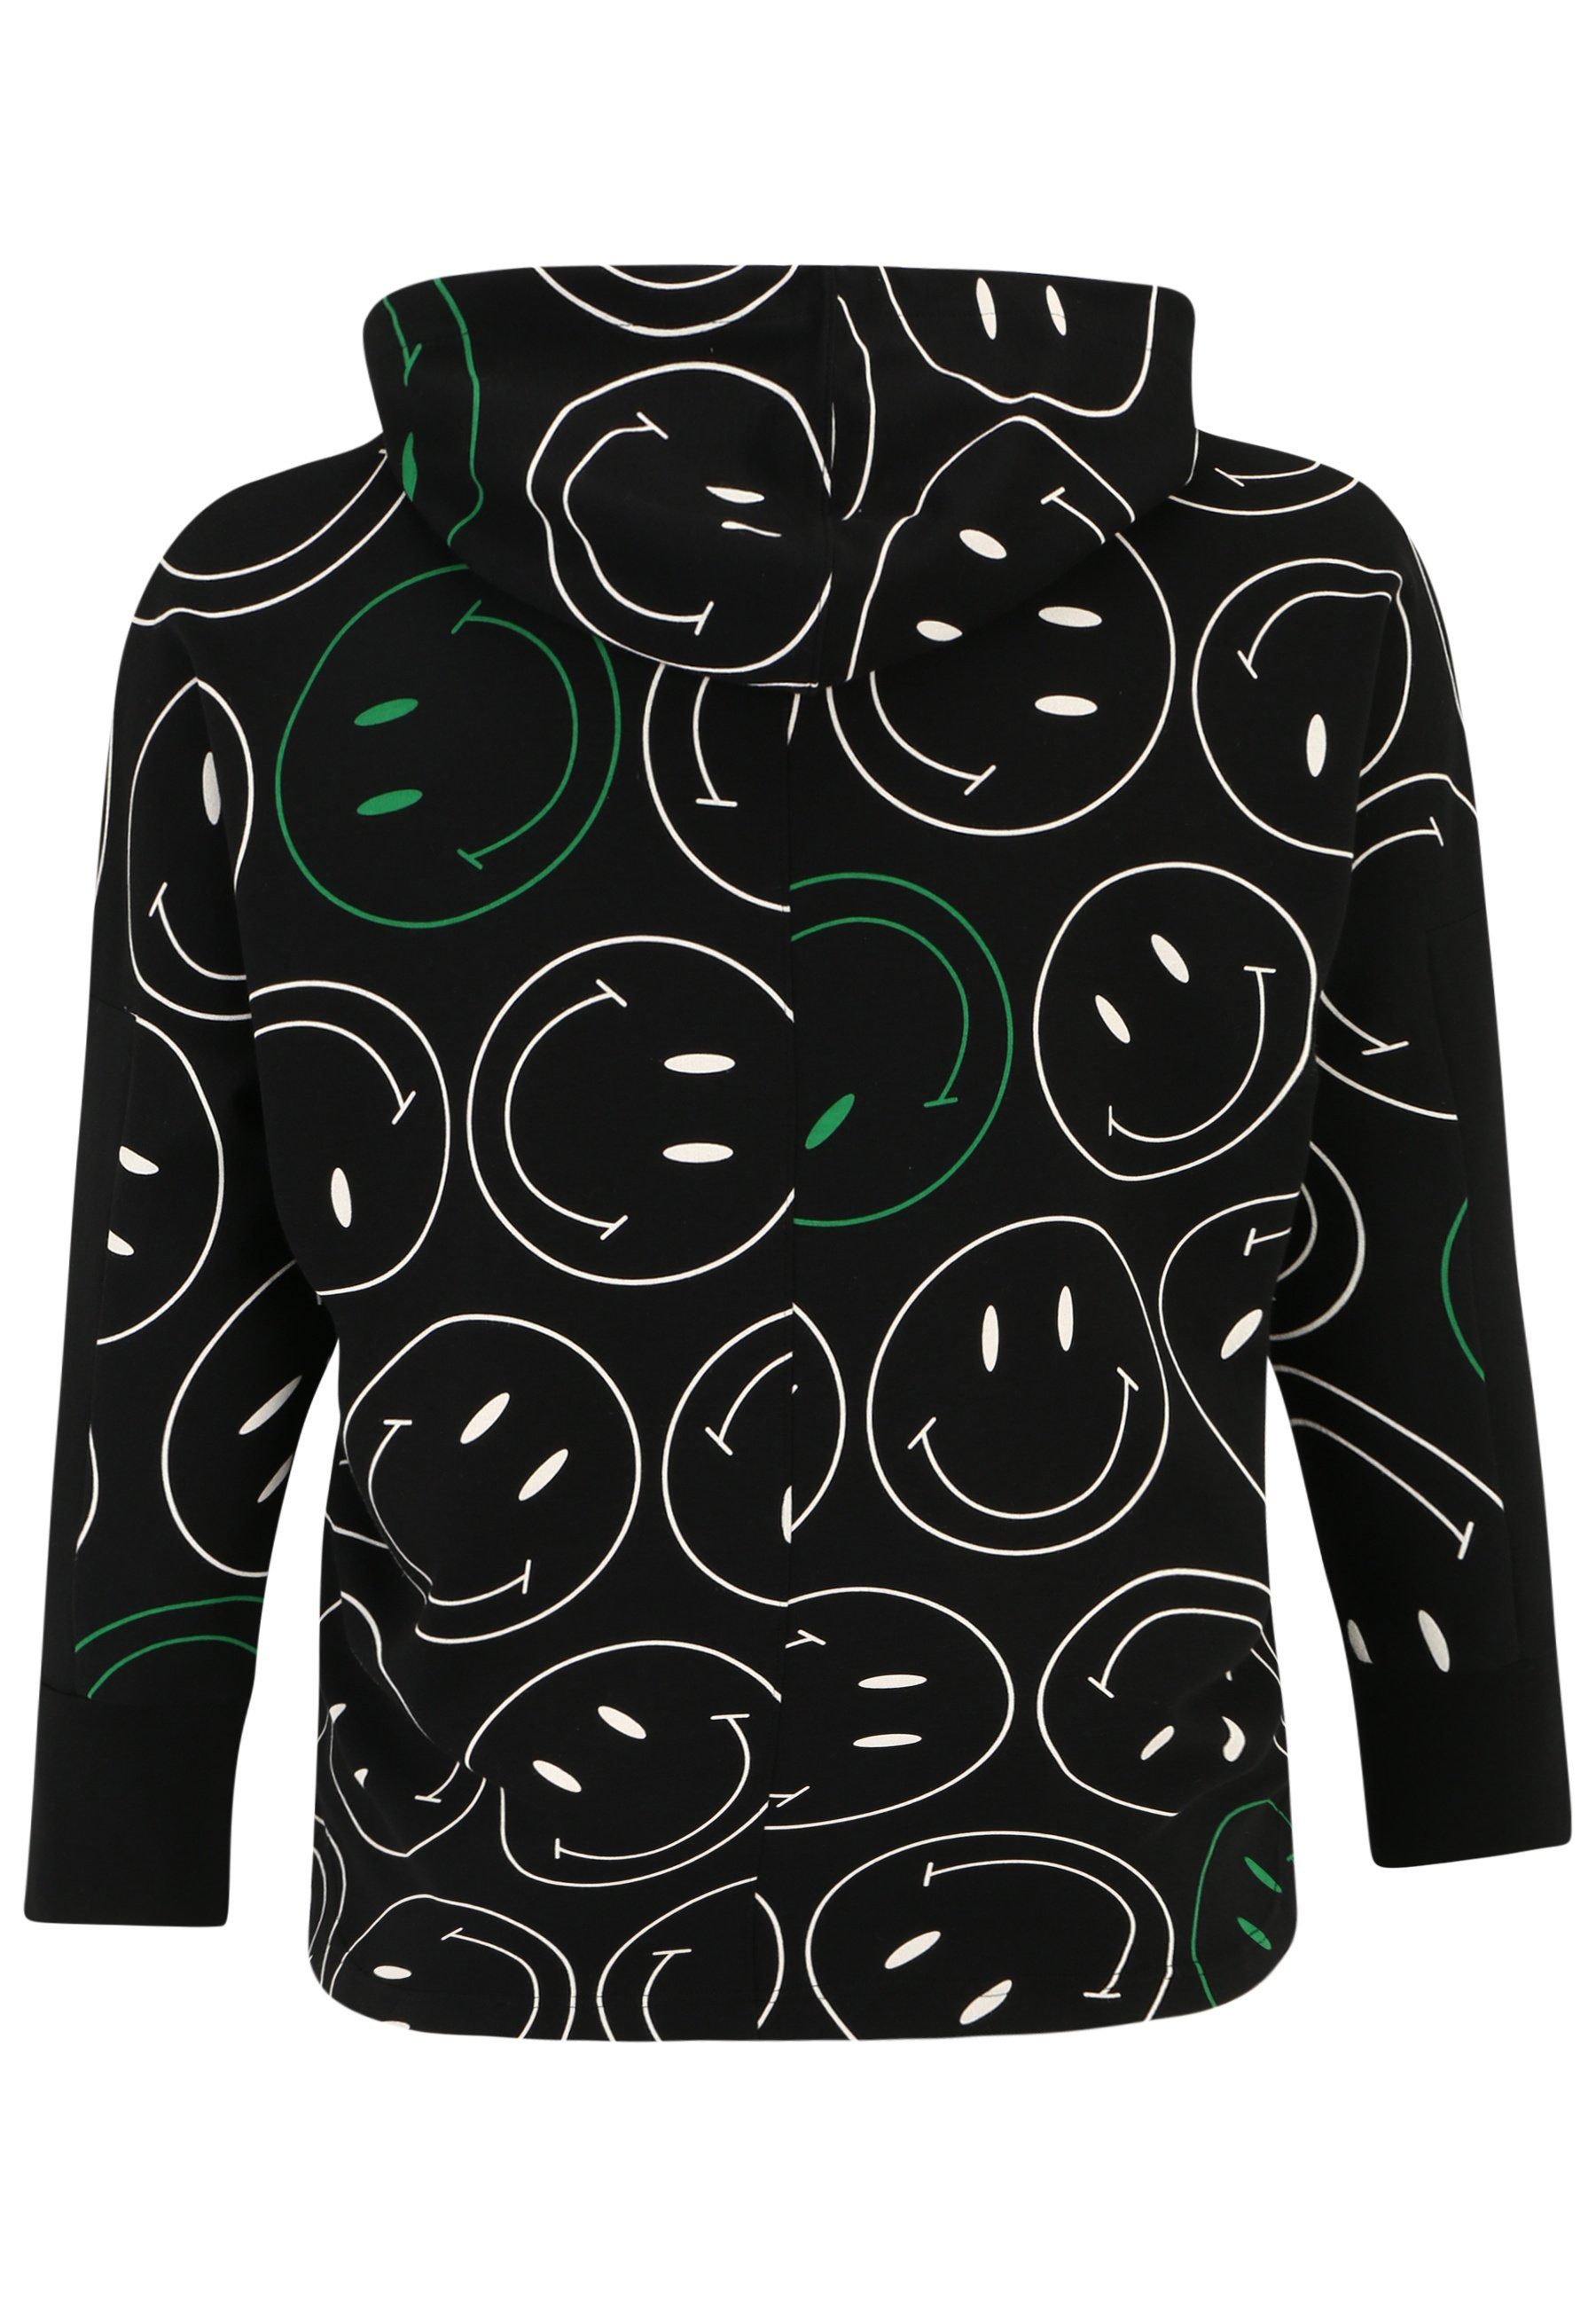 Doris Streich Longsleeve Sweatshirt Smiley-Print mit modernem Hoody und Design mit